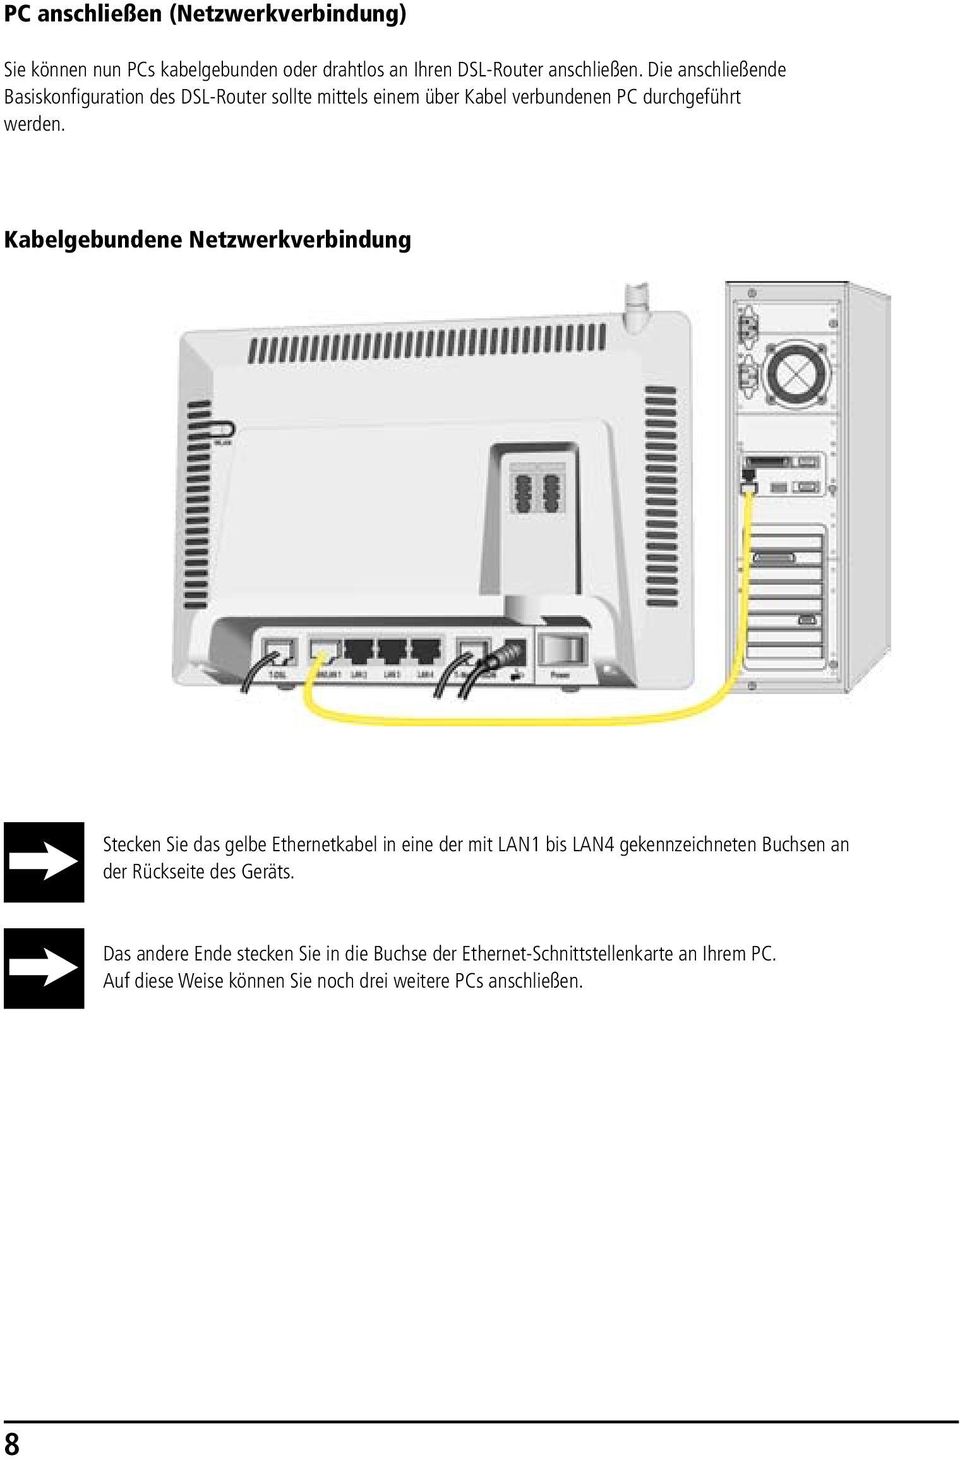 Die anschließende Basiskonfiguration des DSL-Router sollte des mittels Speedport einem über W 700V Kabel sollte verbundenen mittels PC einem durchgeführt über Kabel verbundenen PC durch-